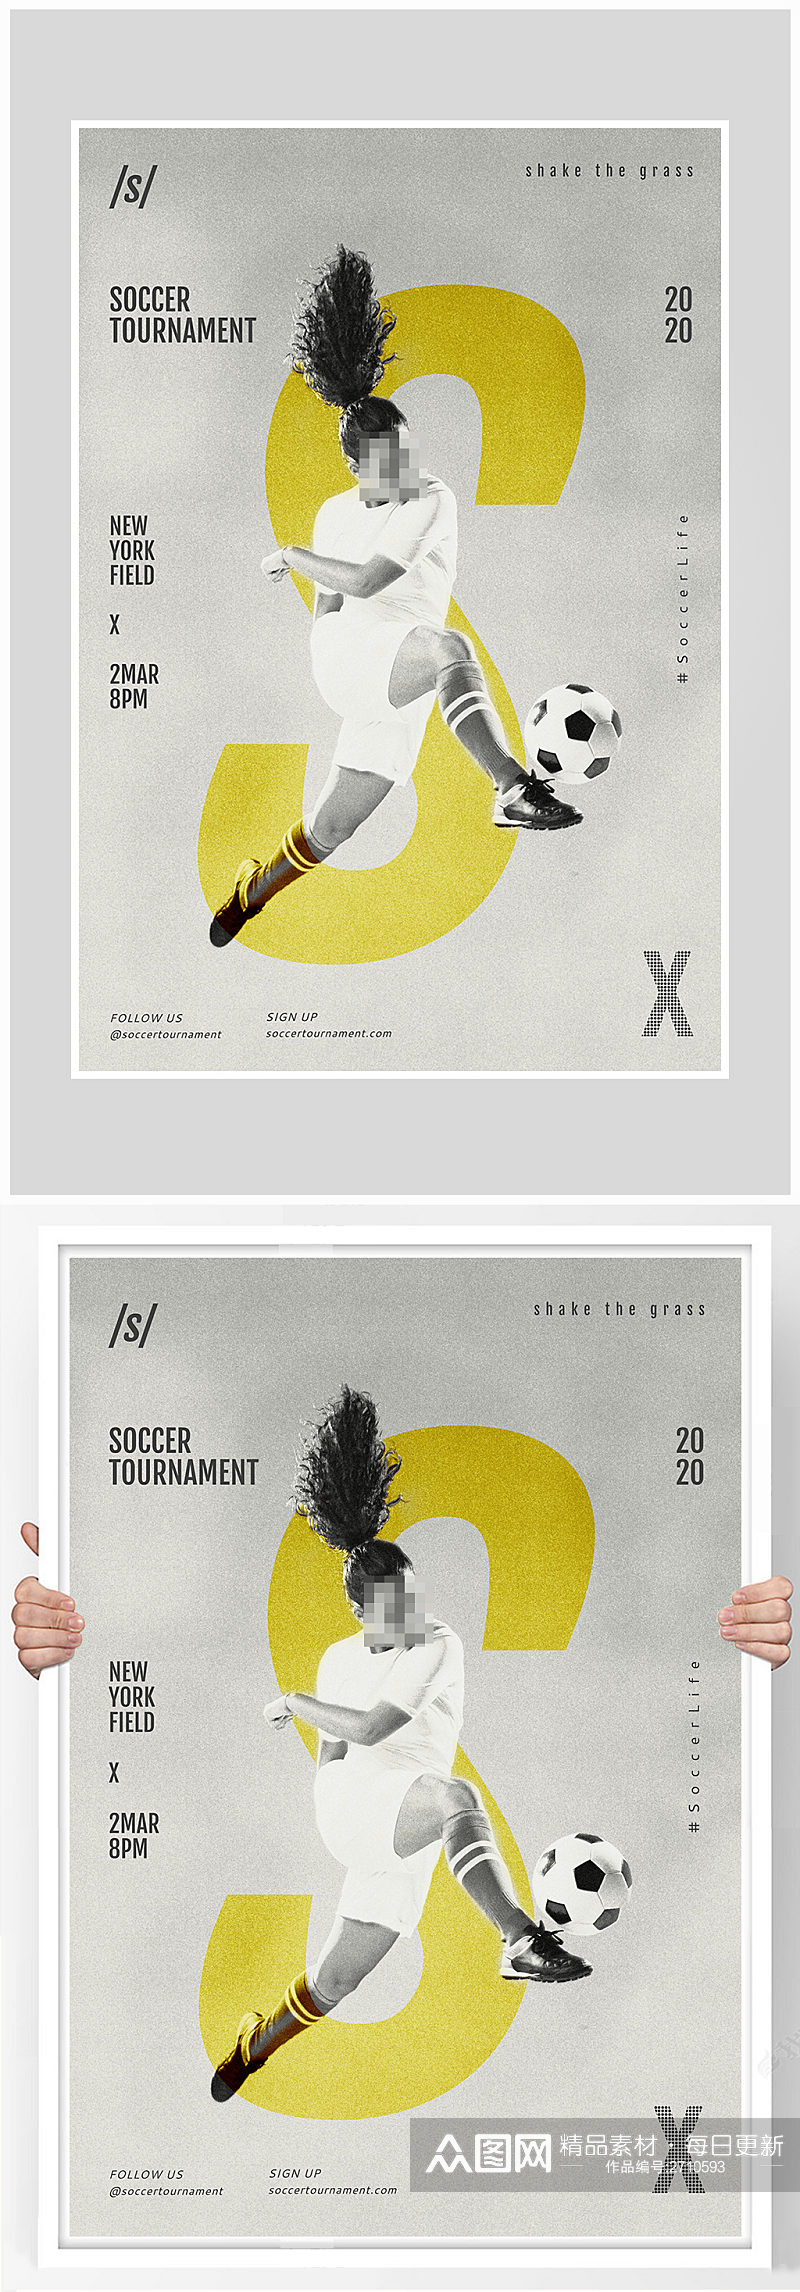 创意简约动感体育足球运动海报设计素材